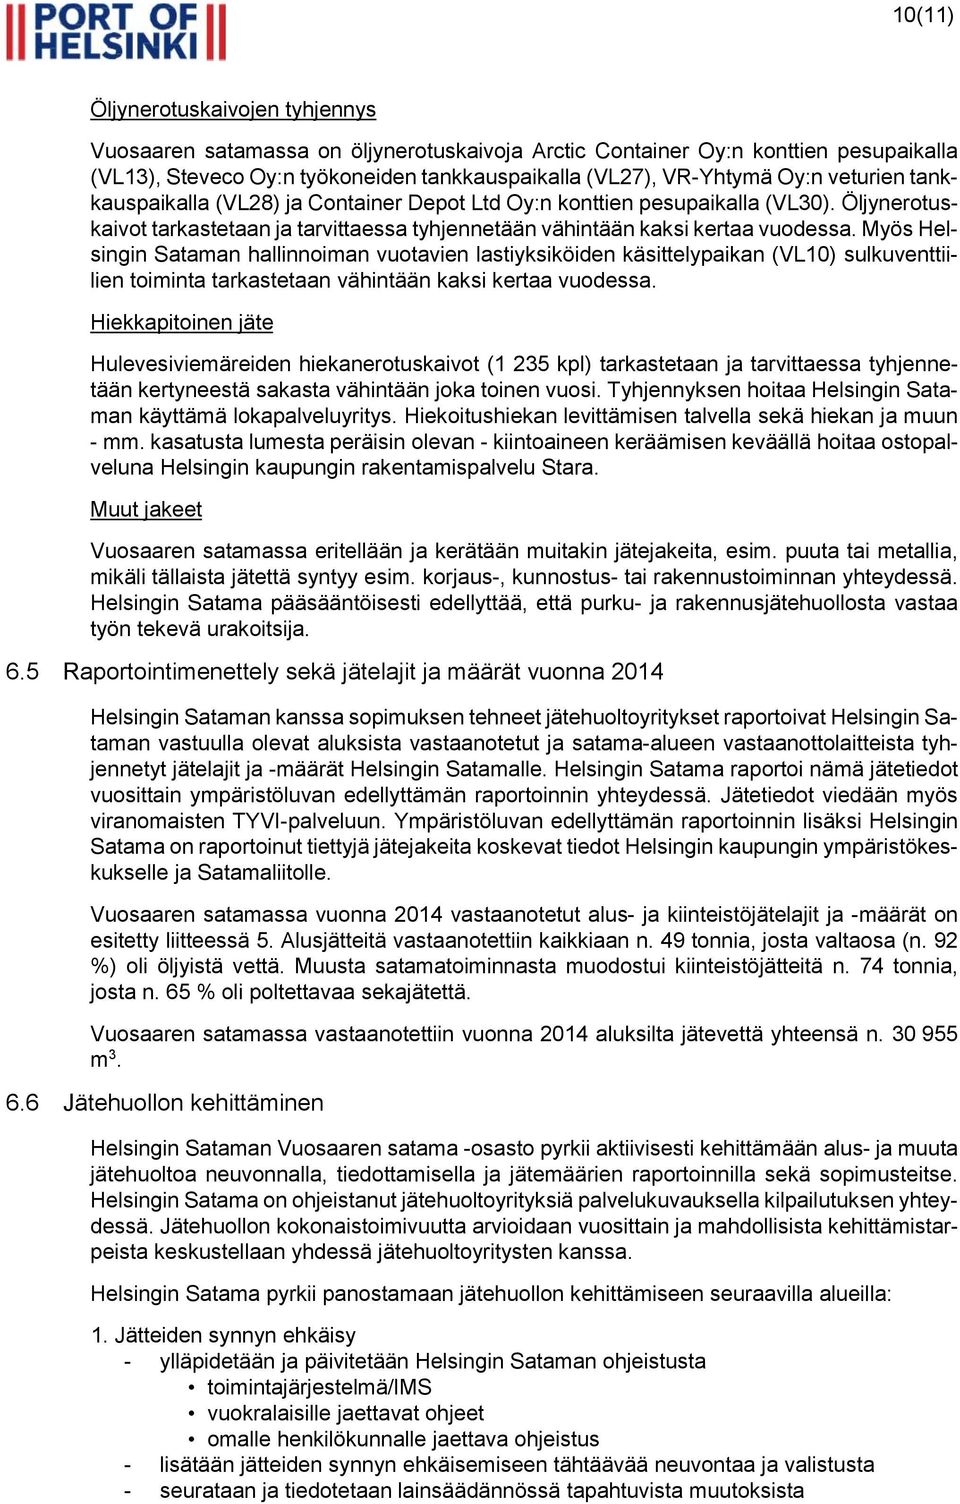 Myös Helsingin Sataman hallinnoiman vuotavien lastiyksiköiden käsittelypaikan (VL10) sulkuventtiilien toiminta tarkastetaan vähintään kaksi kertaa vuodessa.